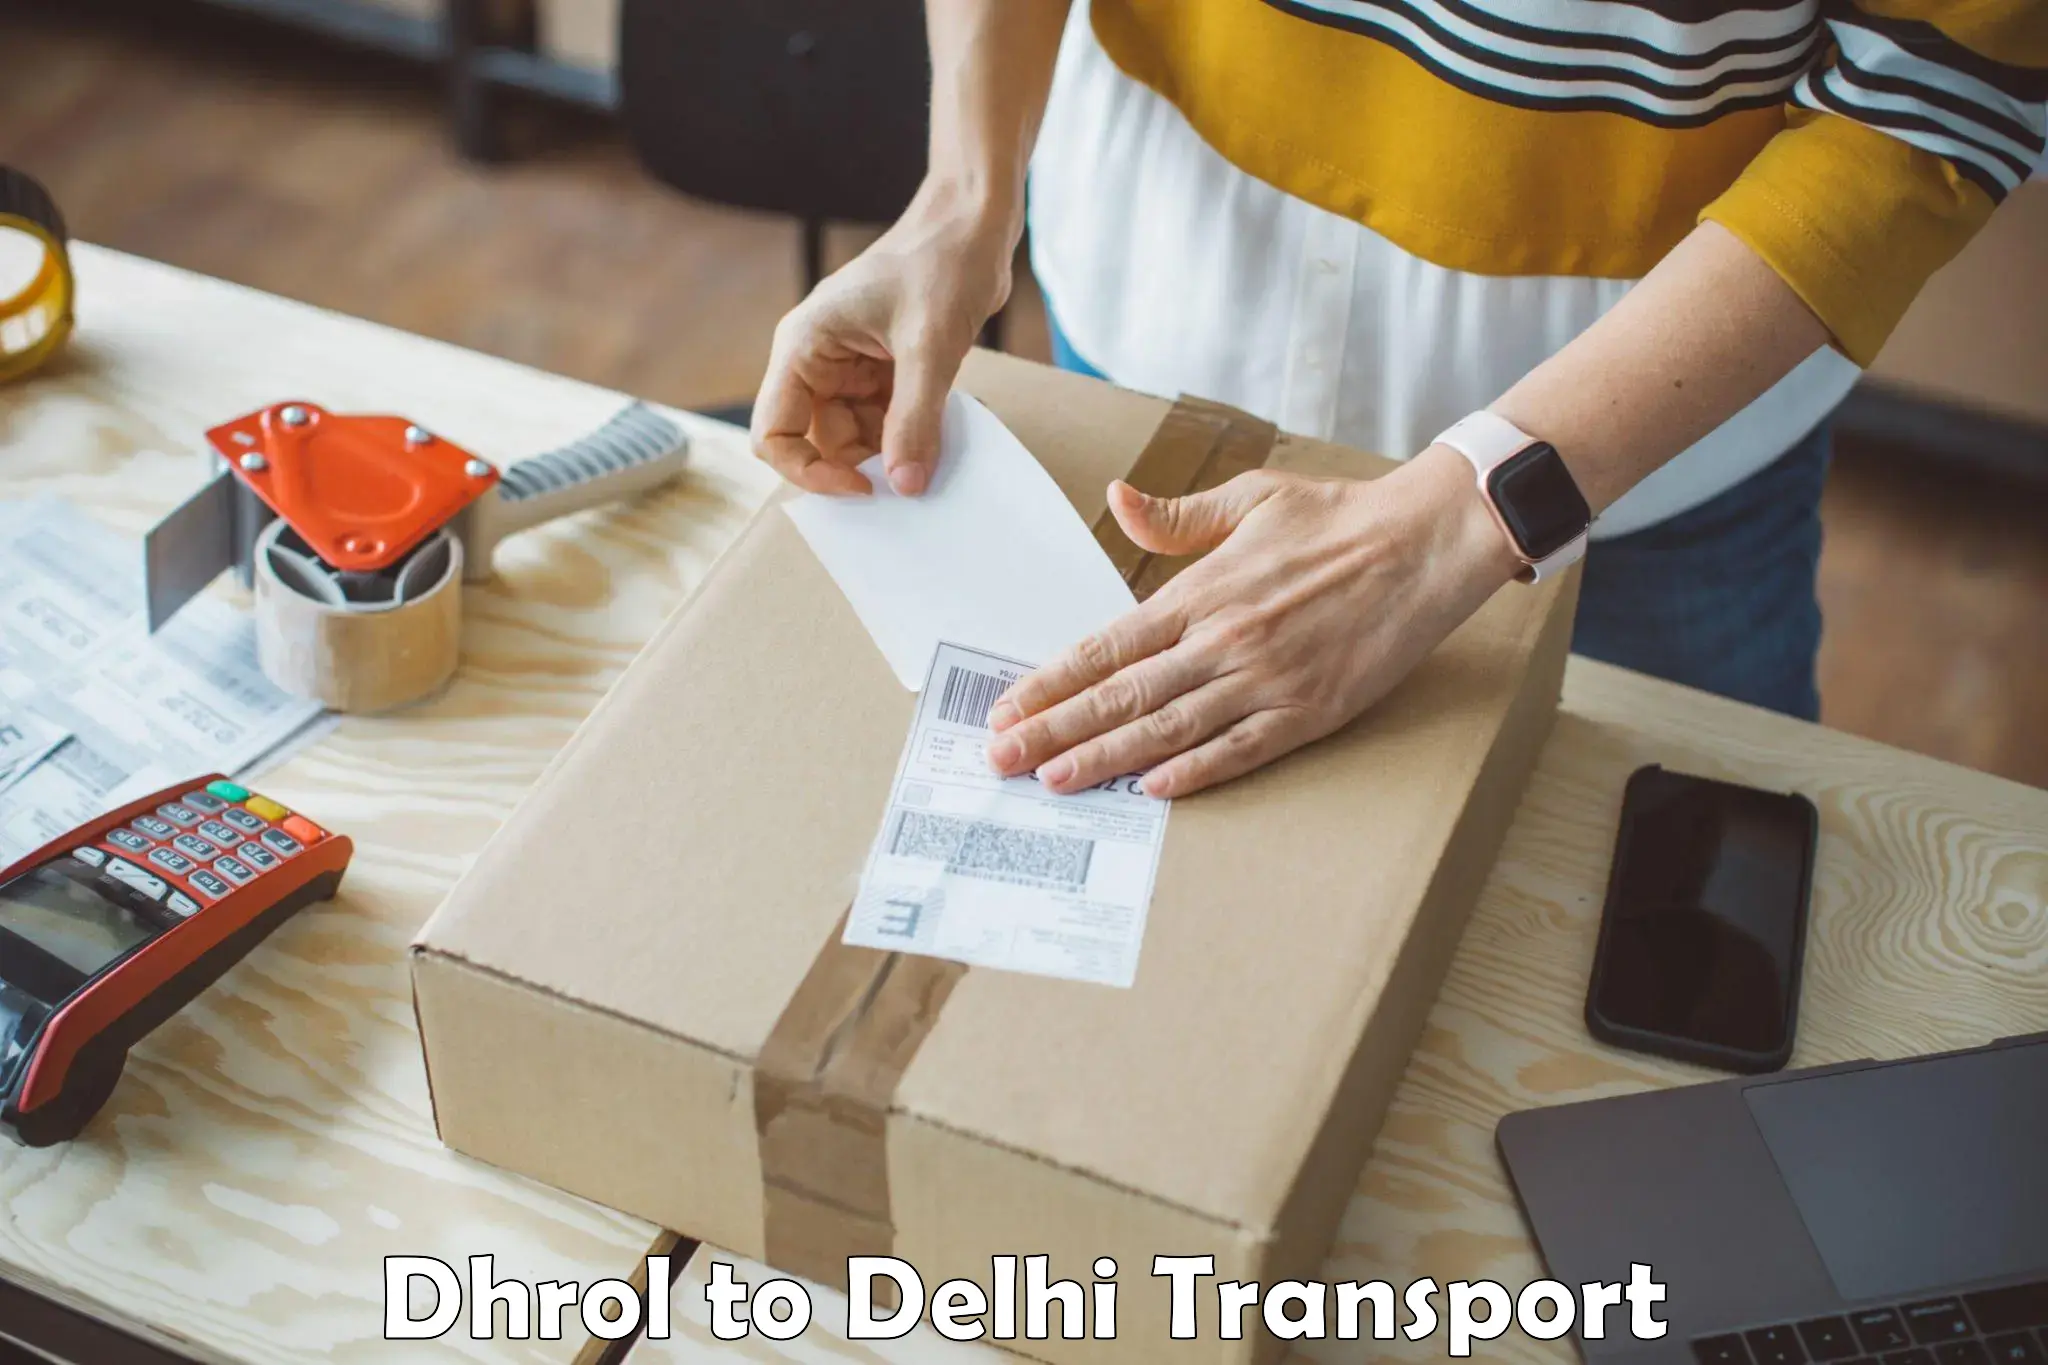 Bike transport service Dhrol to IIT Delhi